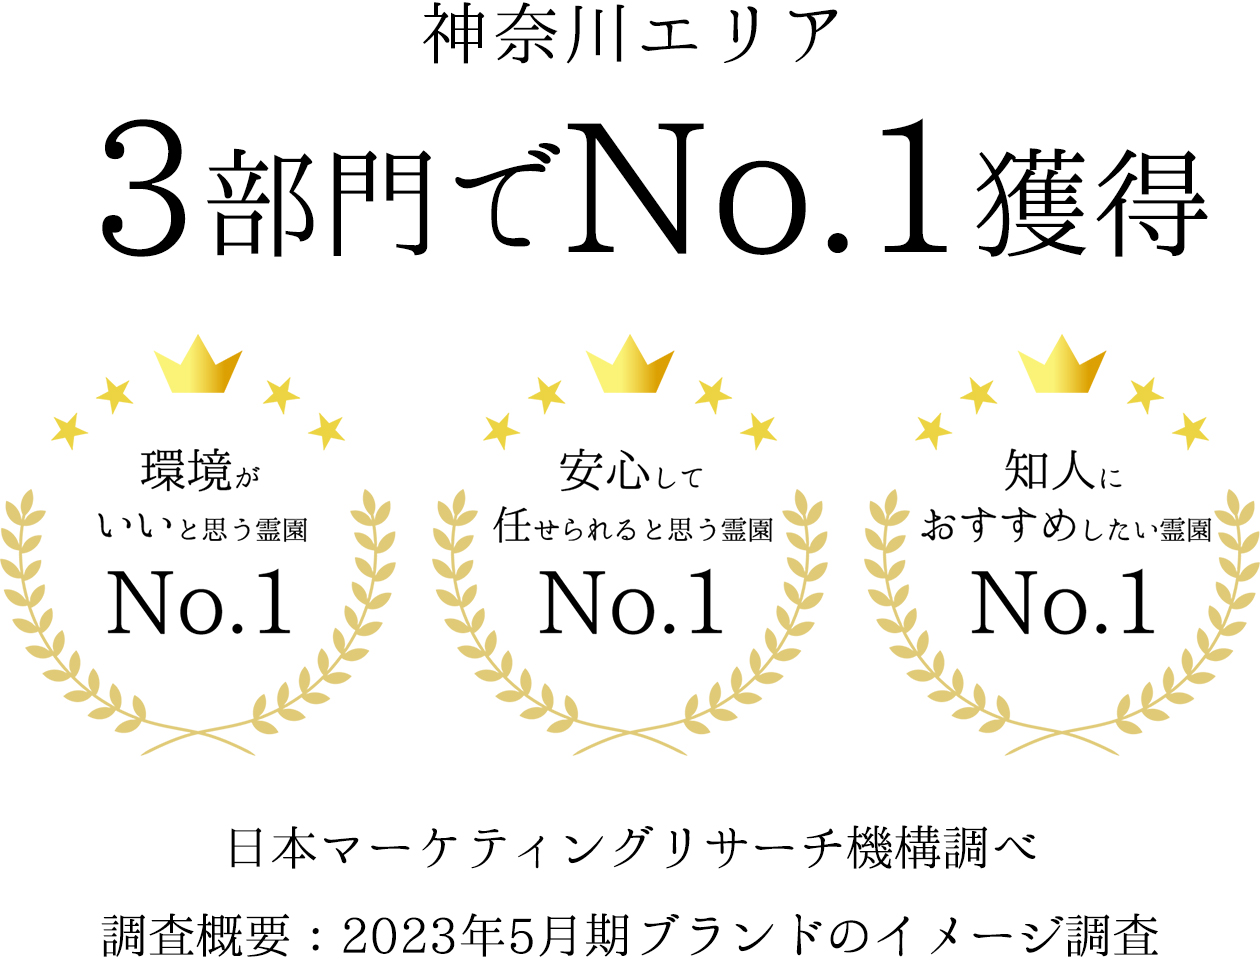 神奈川エリア3部門でNo.1獲得